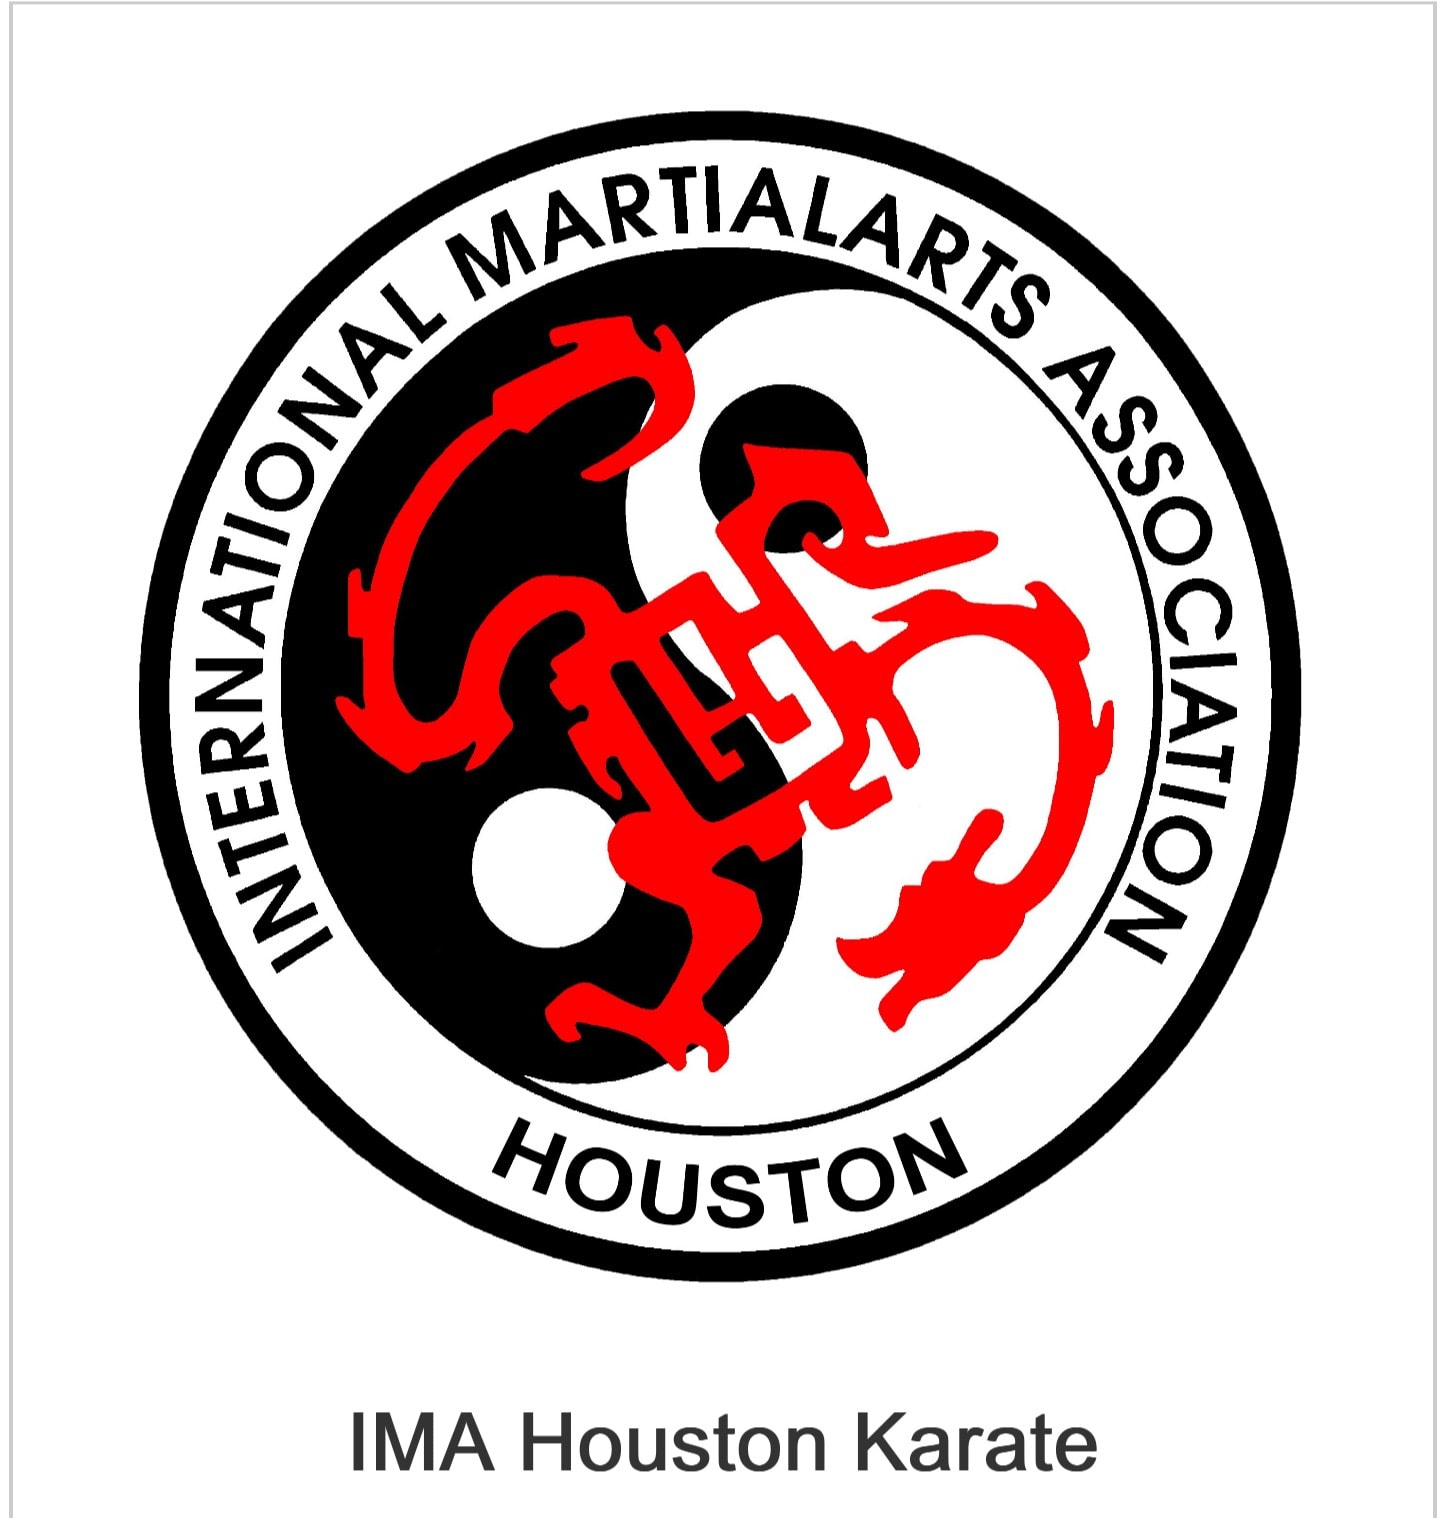 IMA Houston Karate